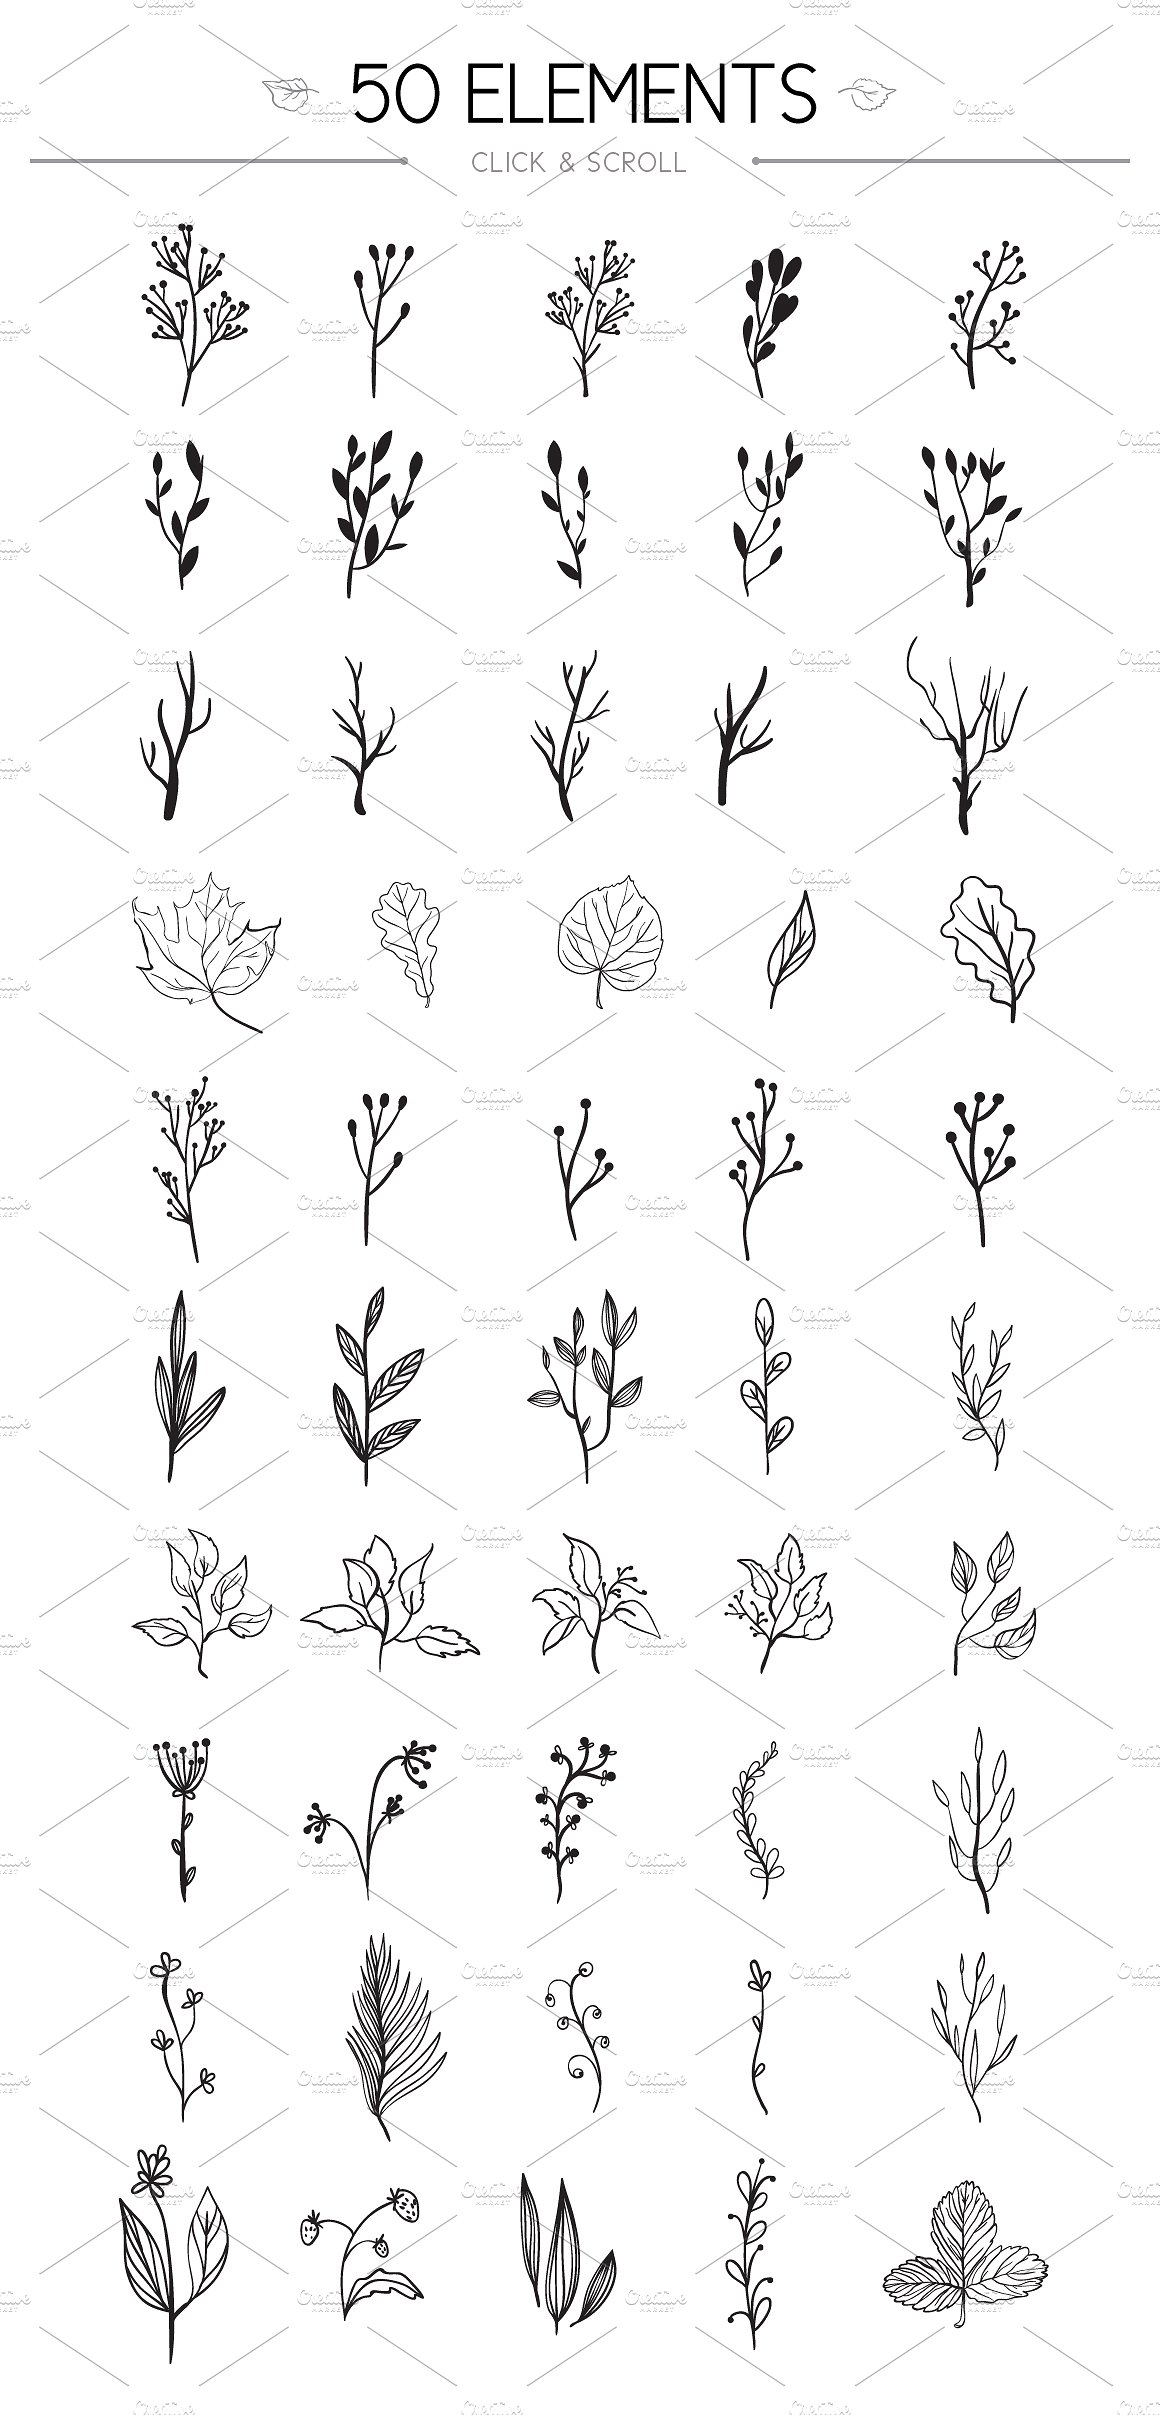 适合春季的小清新手绘花卉图形图案素材下载插图(6)